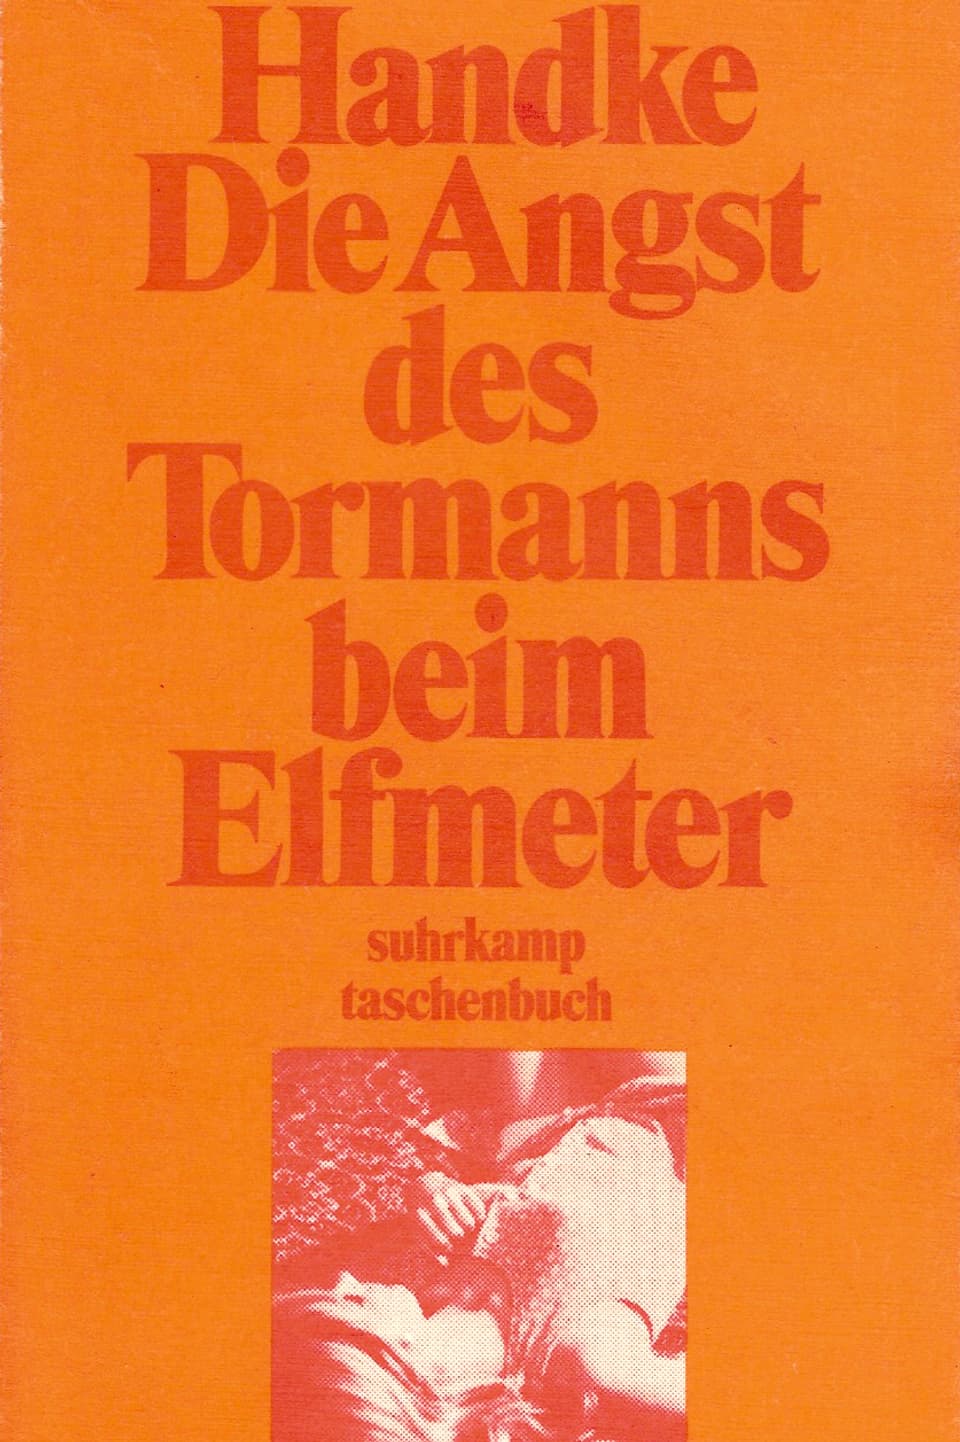 Buchcover zu Peter Handkes «Die Angst des Tormanns beim Elfmeter»